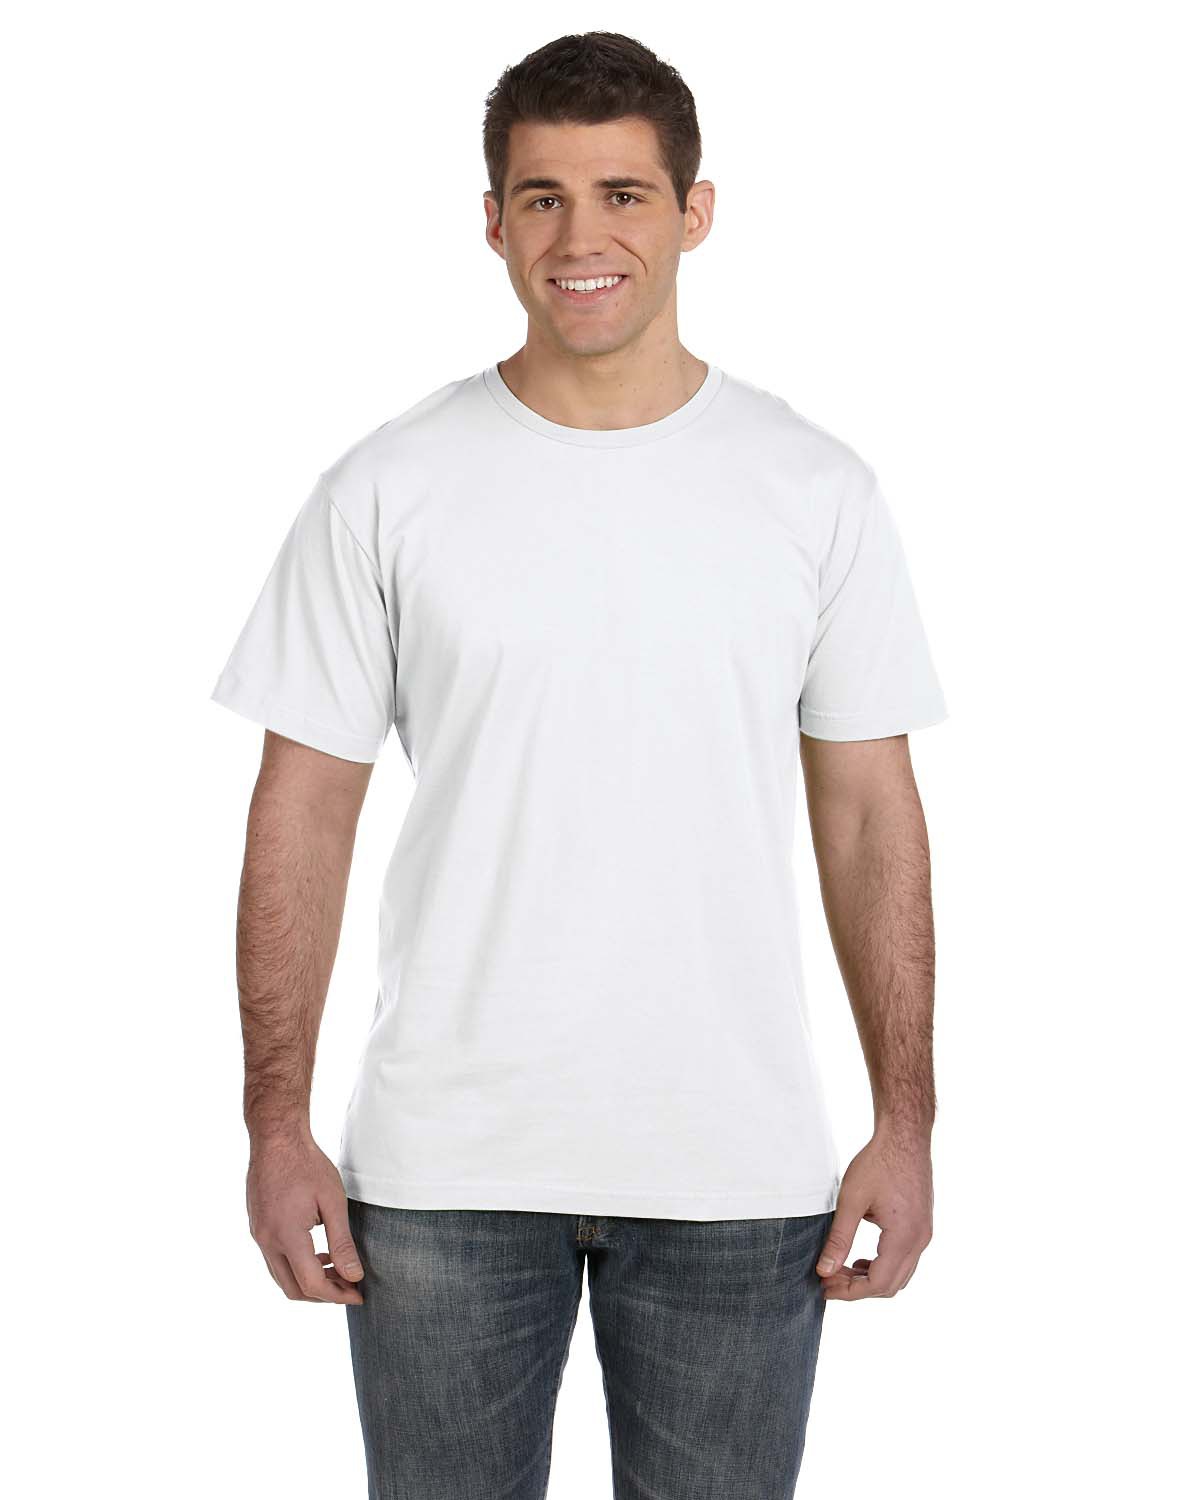 LAT 6901 - Fine Jersey T-Shirt $3.87 - T-Shirts